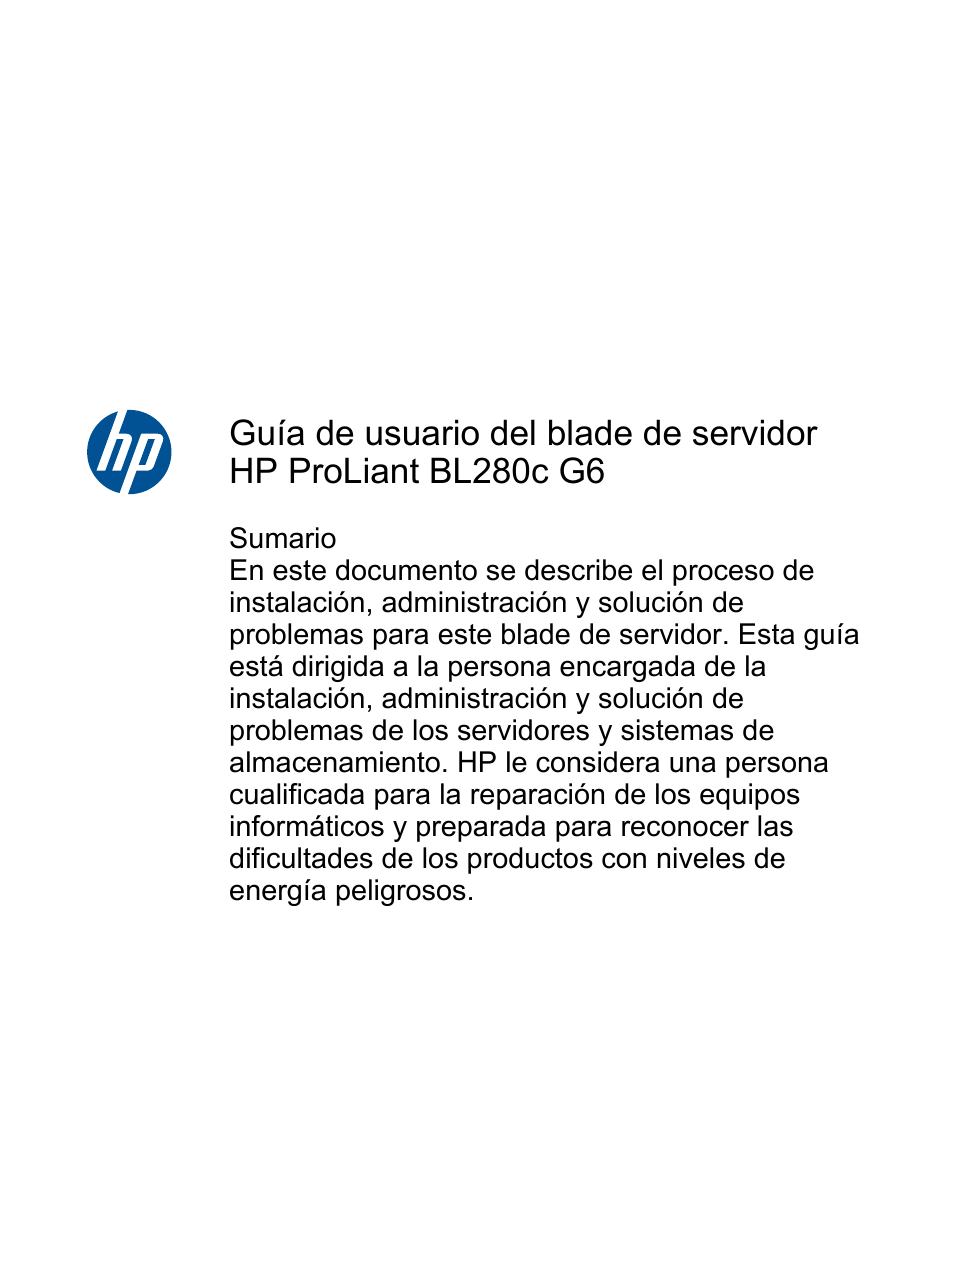 HP Blade de servidor HP ProLiant BL280c G6 Manual del usuario | Páginas: 121